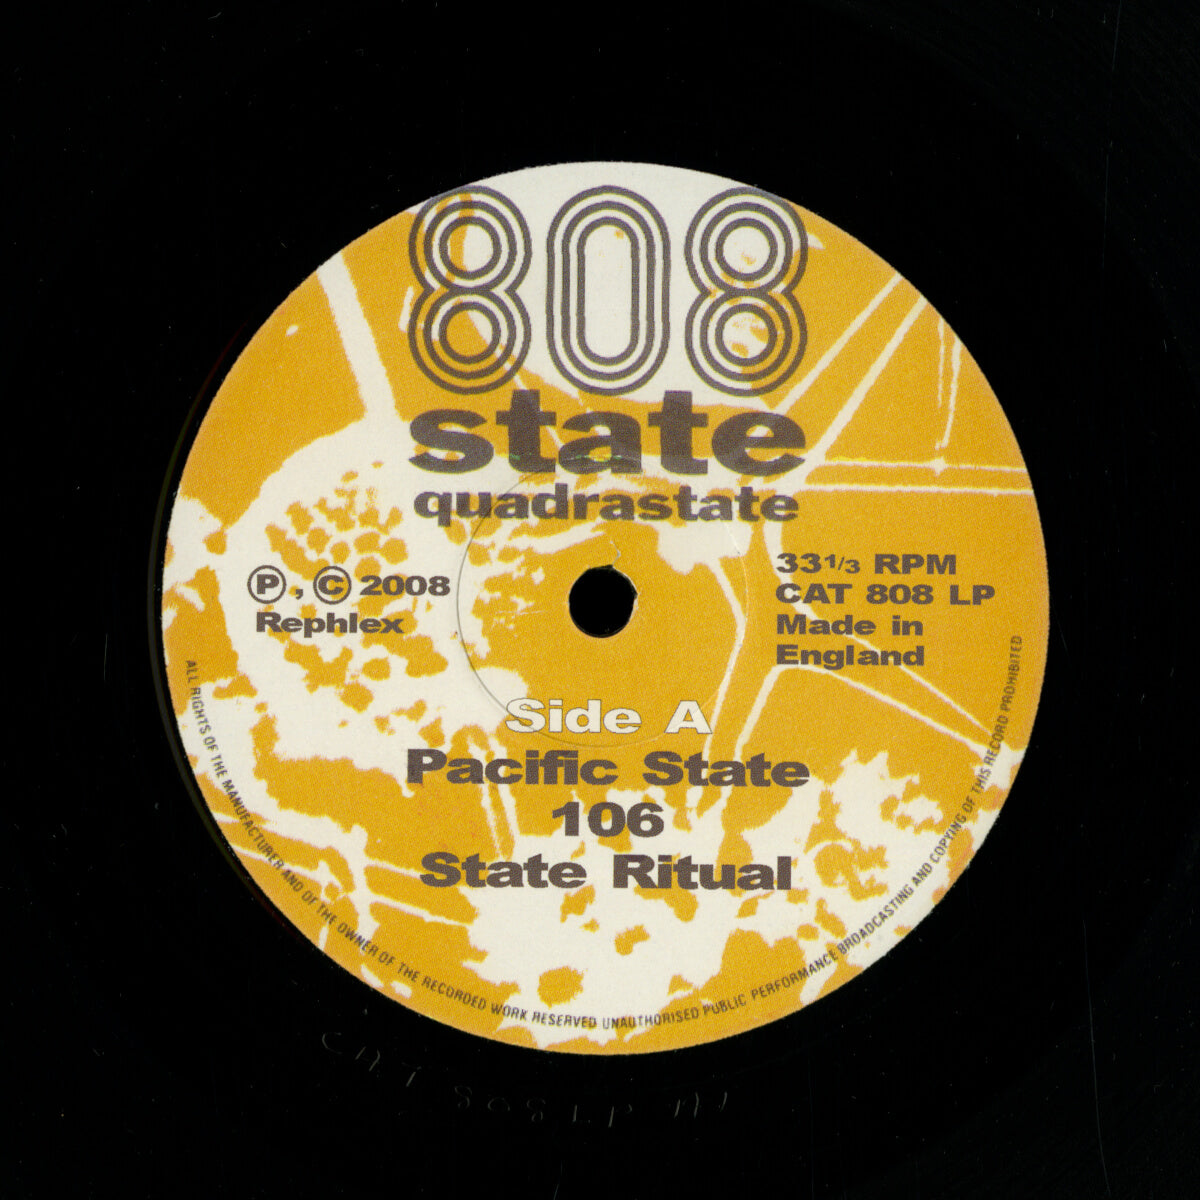 808 State – Quadrastate (2008 Reissue)